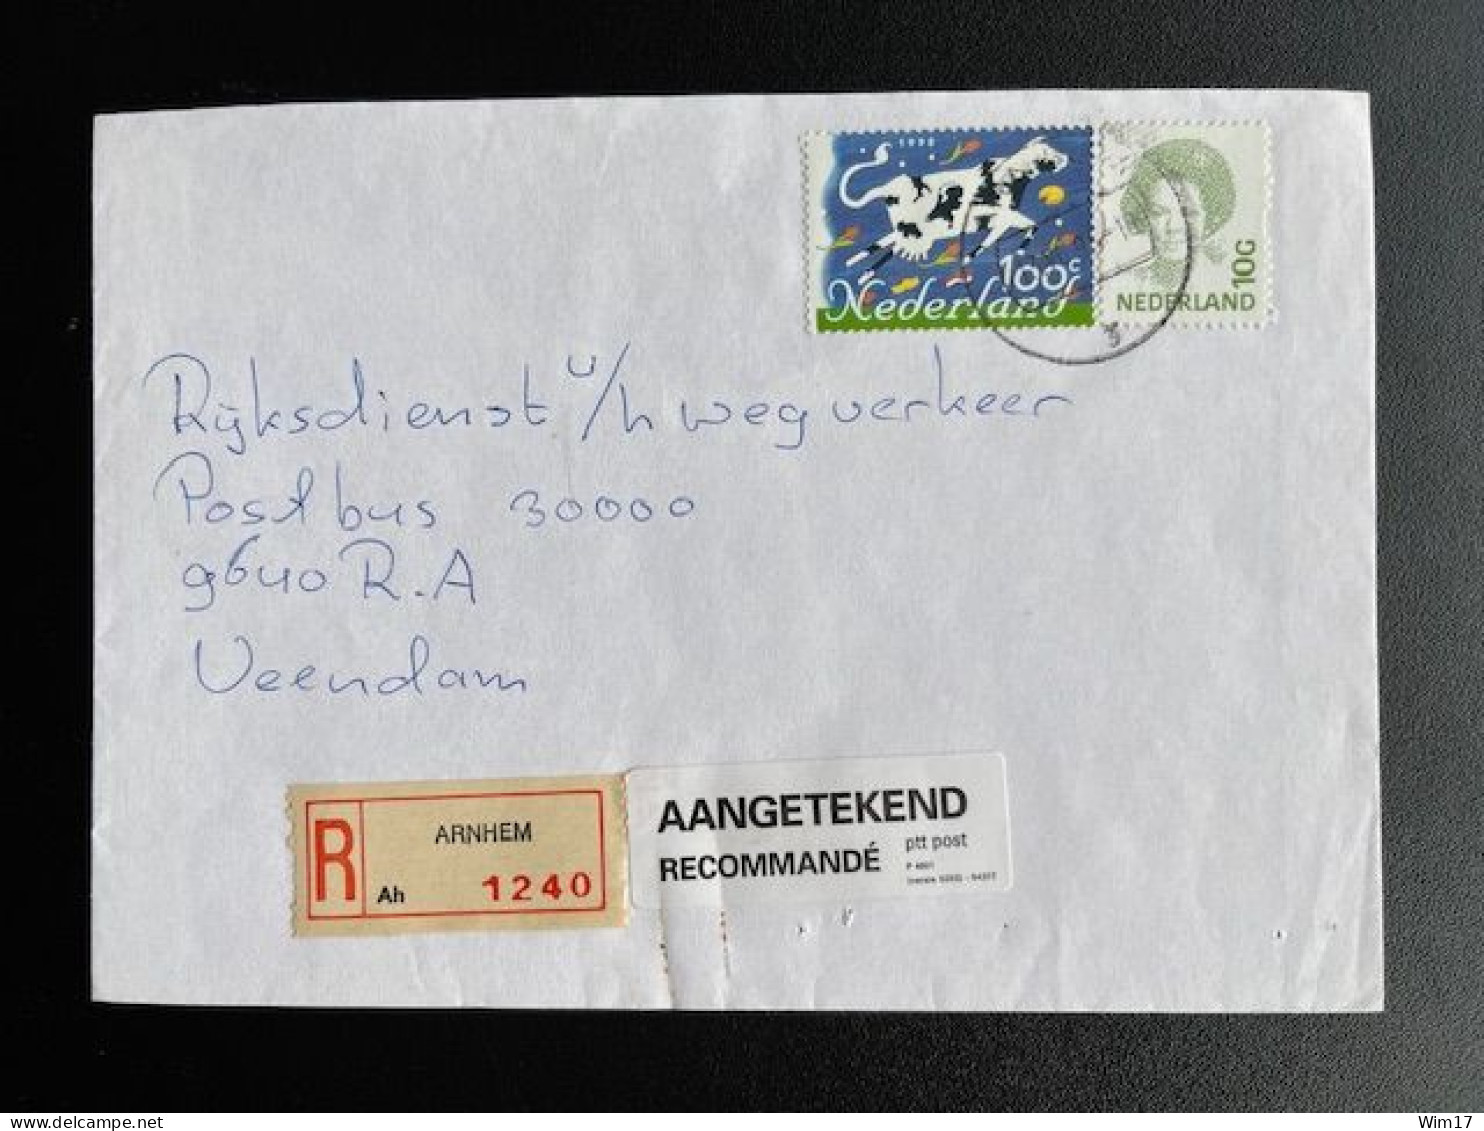 NETHERLANDS 1995 REGISTERED LETTER ARNHEM TO VEENDAM 13-06-1995 NEDERLAND AANGETEKEND - Cartas & Documentos